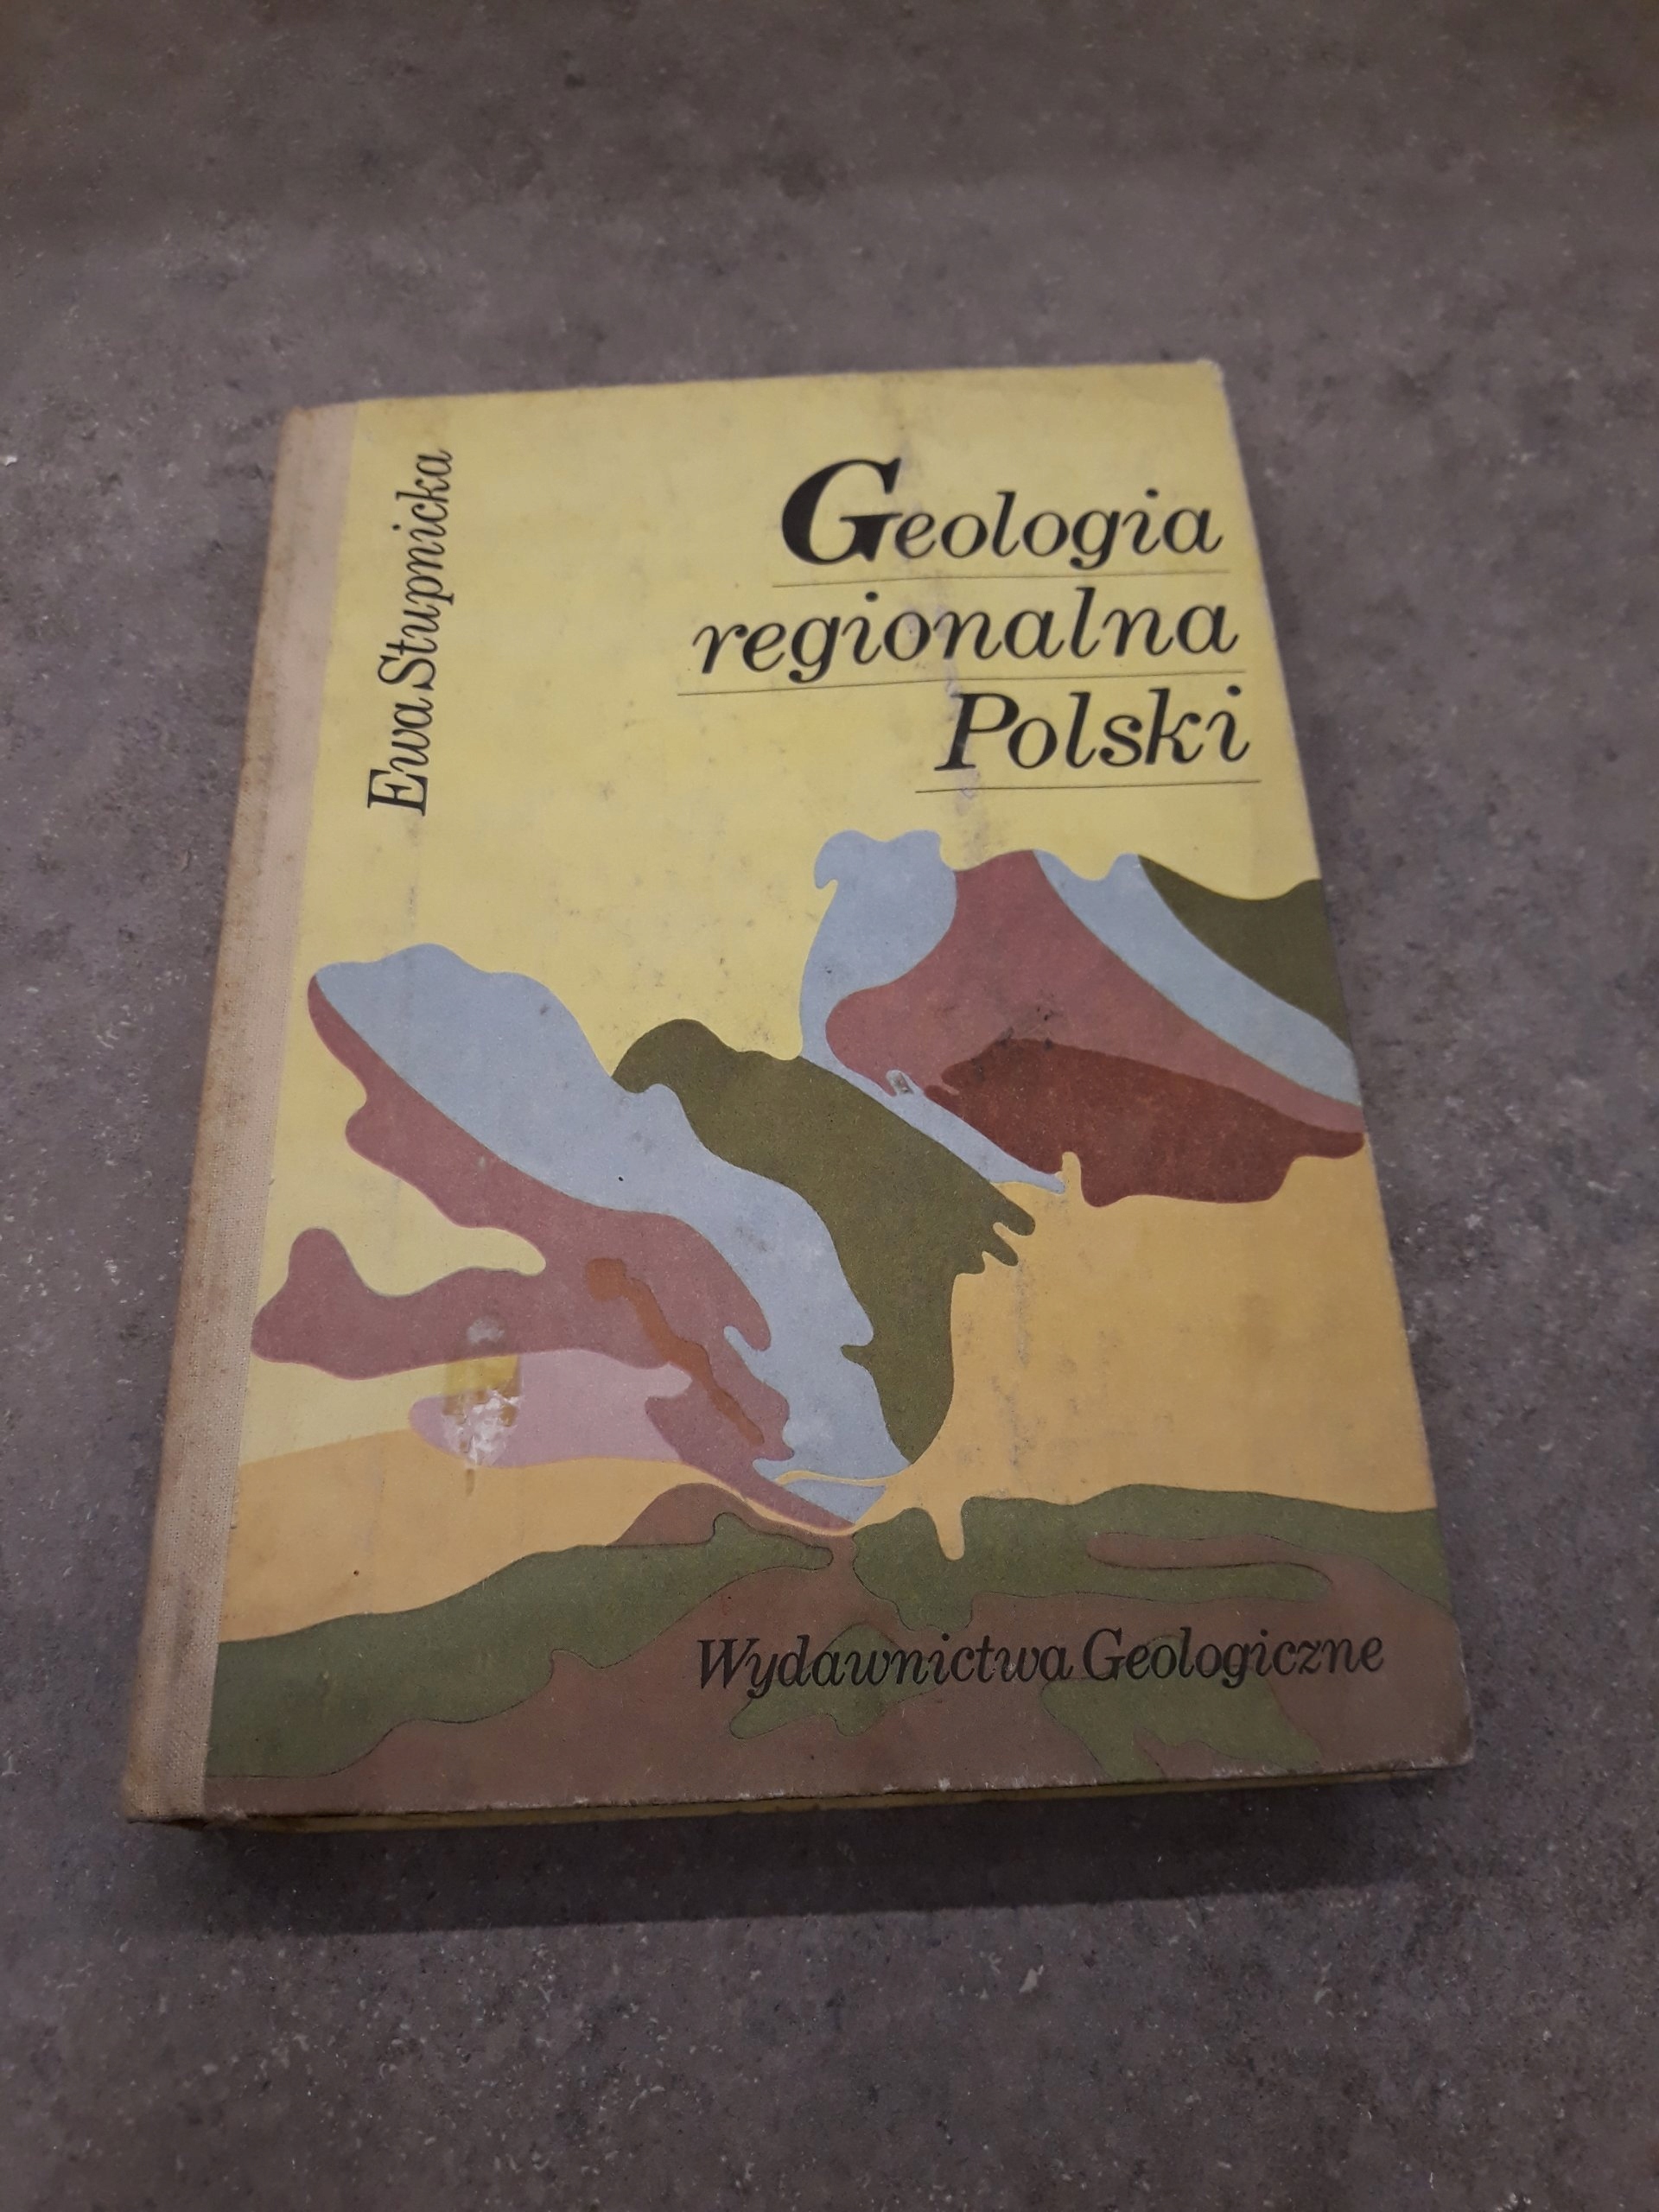 stupnicka geologia regionalna polski